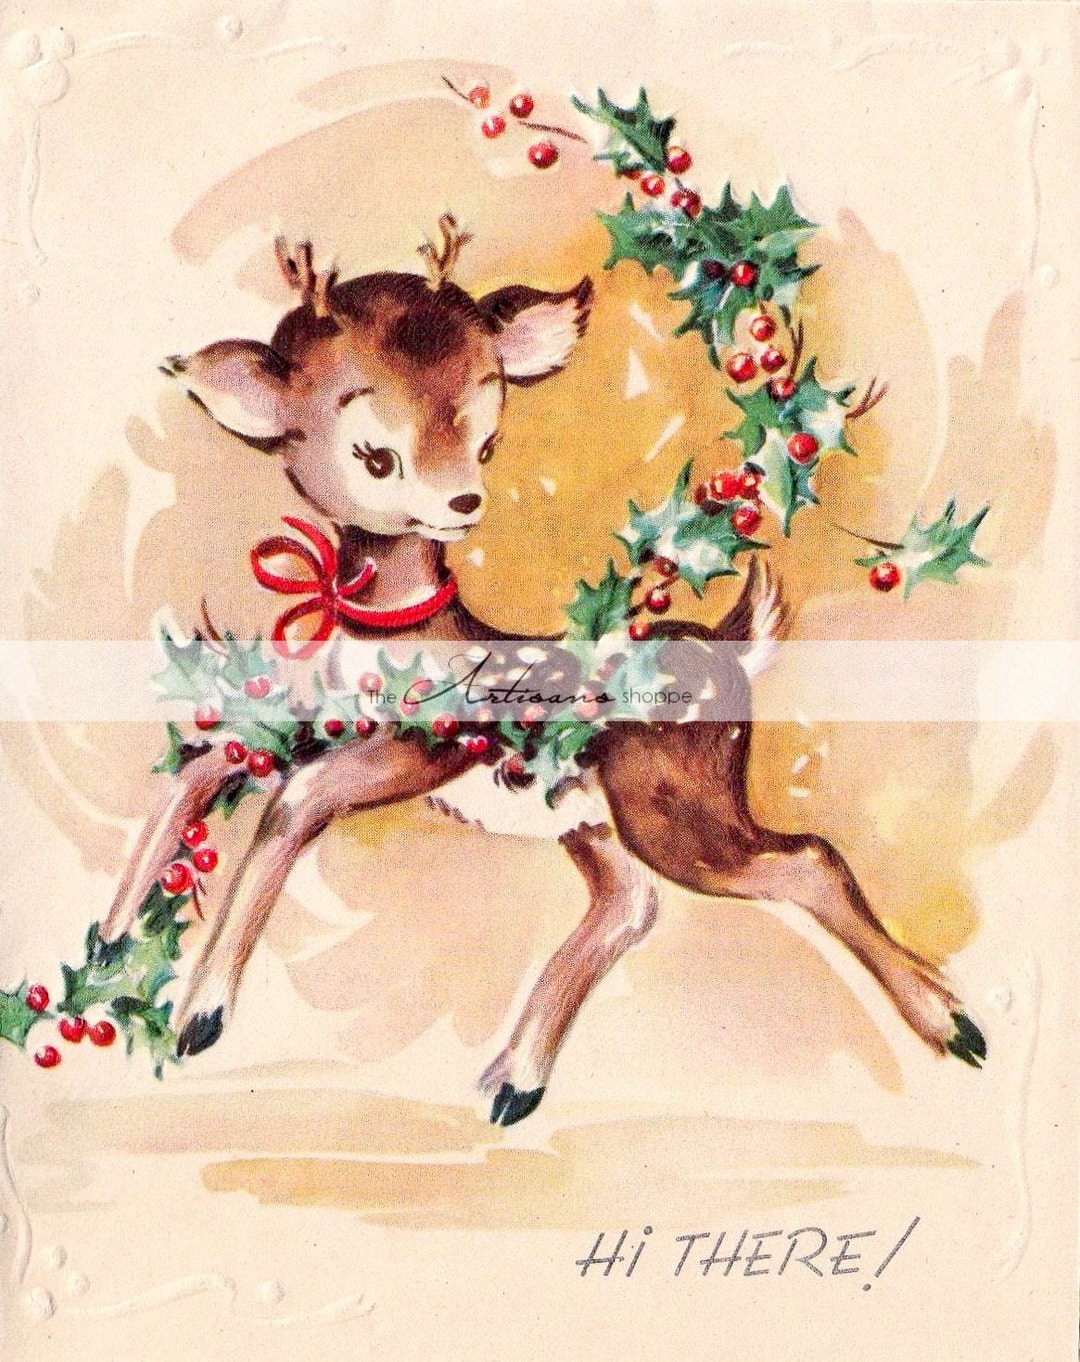 Vintage Christmas Fawn Deer Holly Berries Card Image Digital Download ...